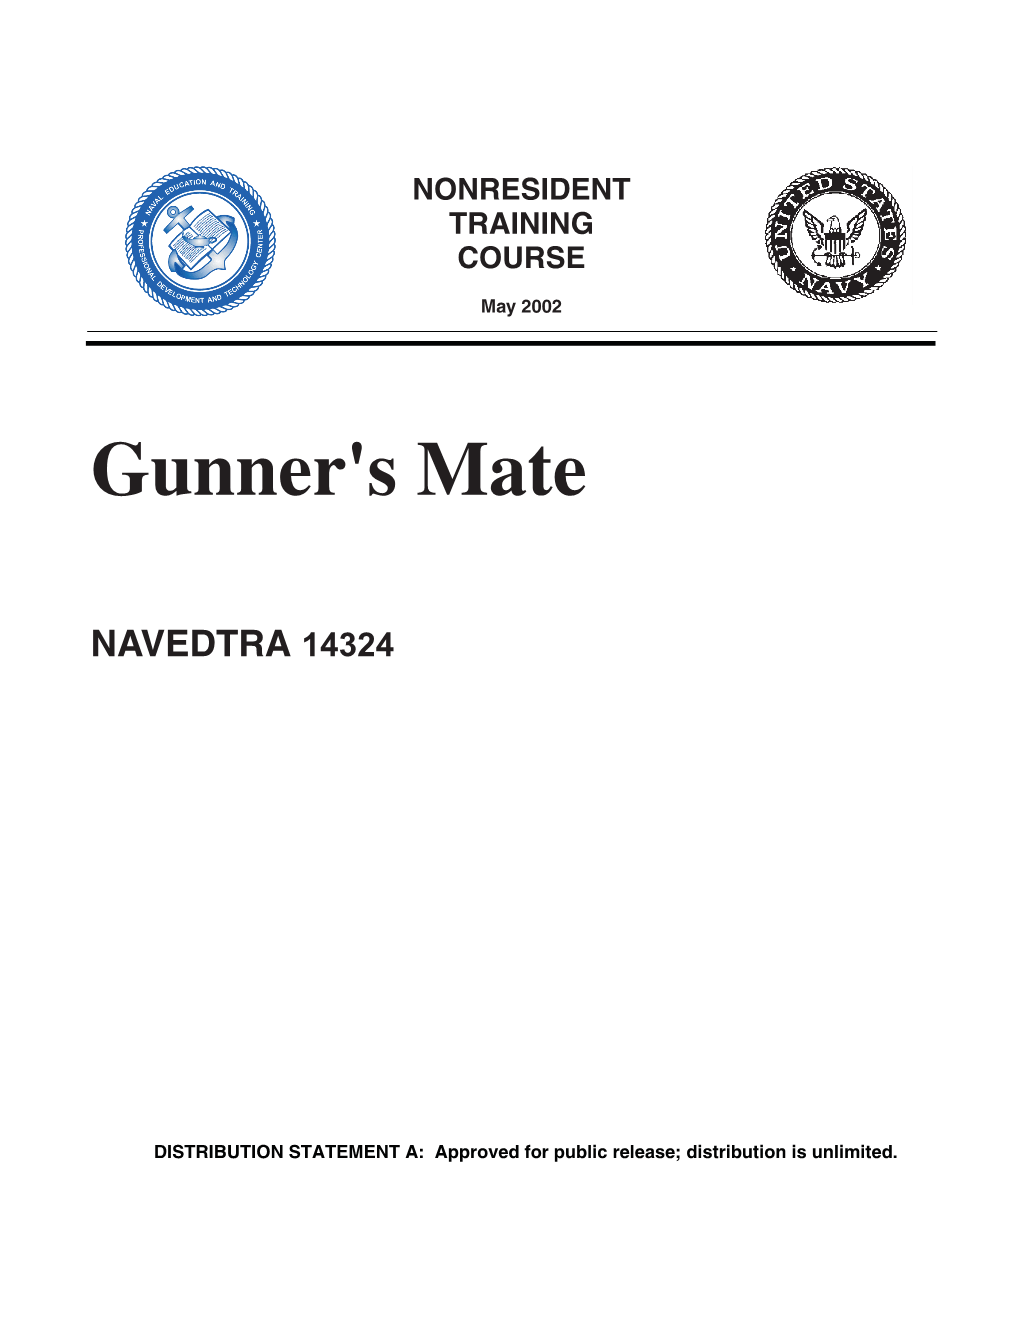 Gunner's Mate